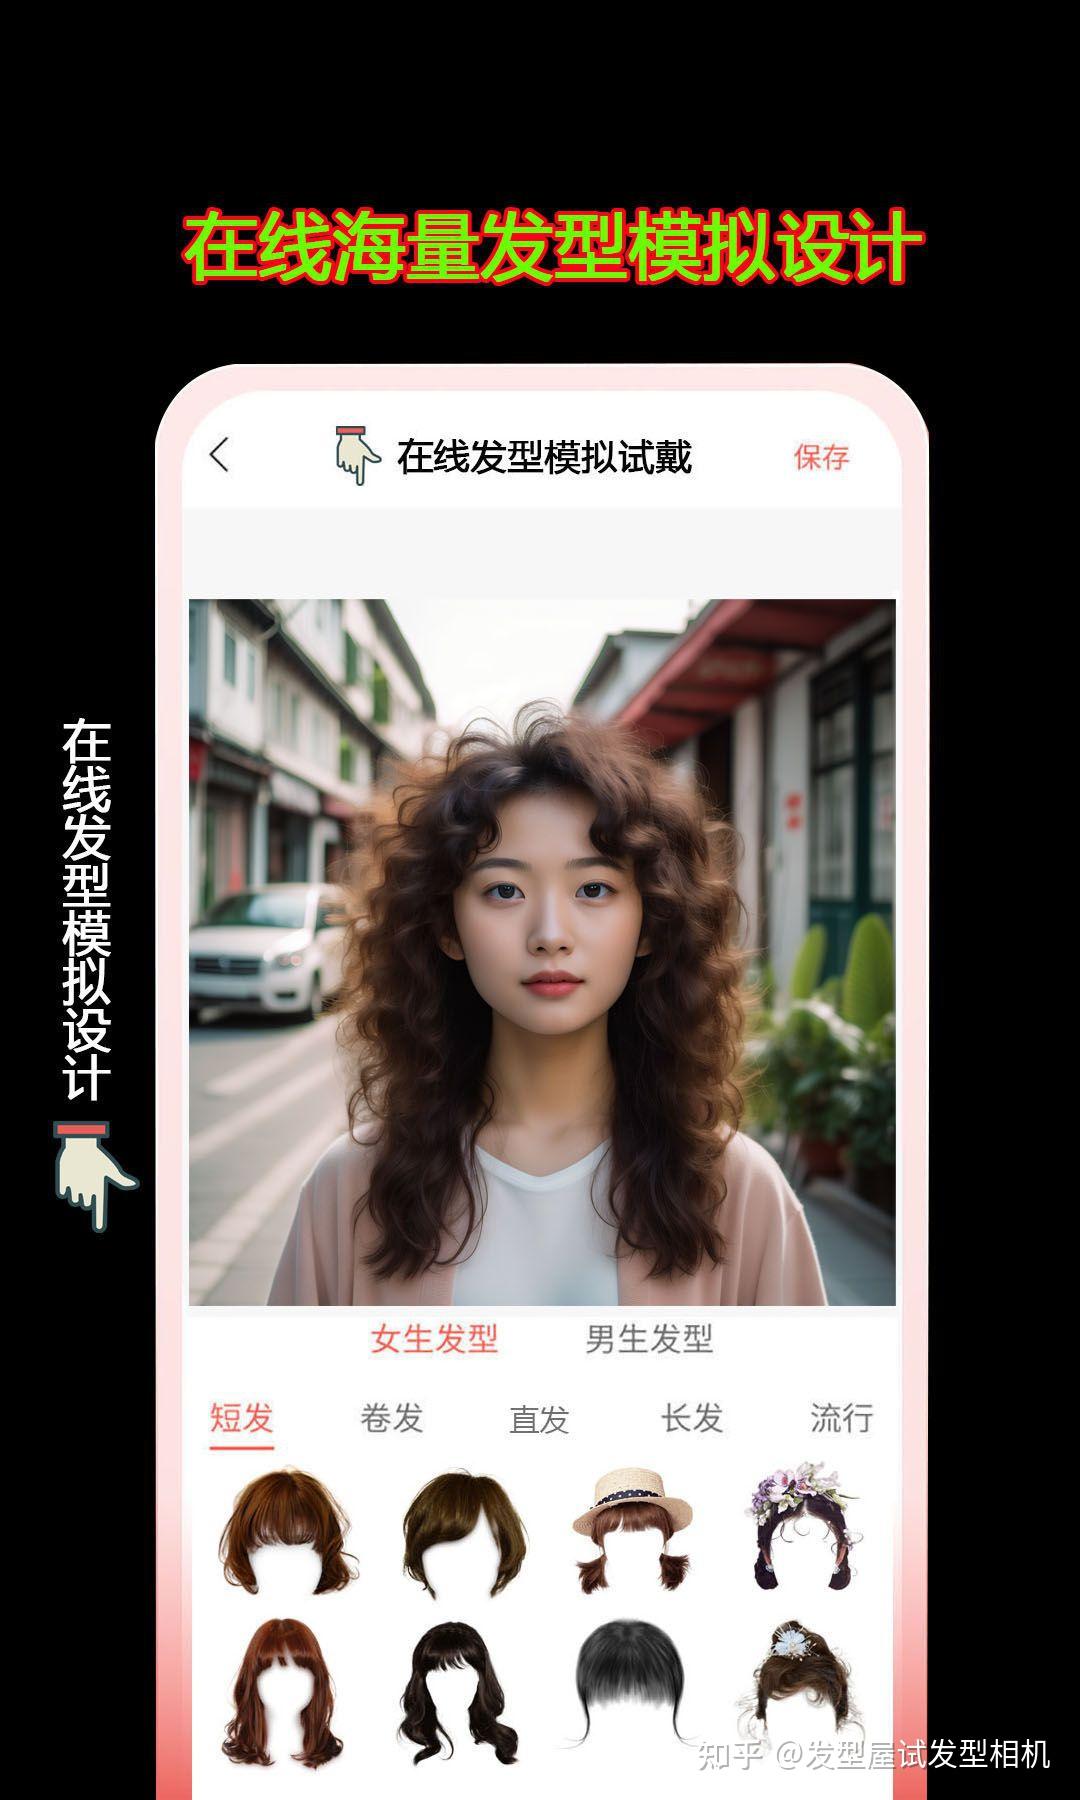 魔妆镜-AR试妆-AI测肤染发-人脸检测-广州帕克西软件开发有限公司